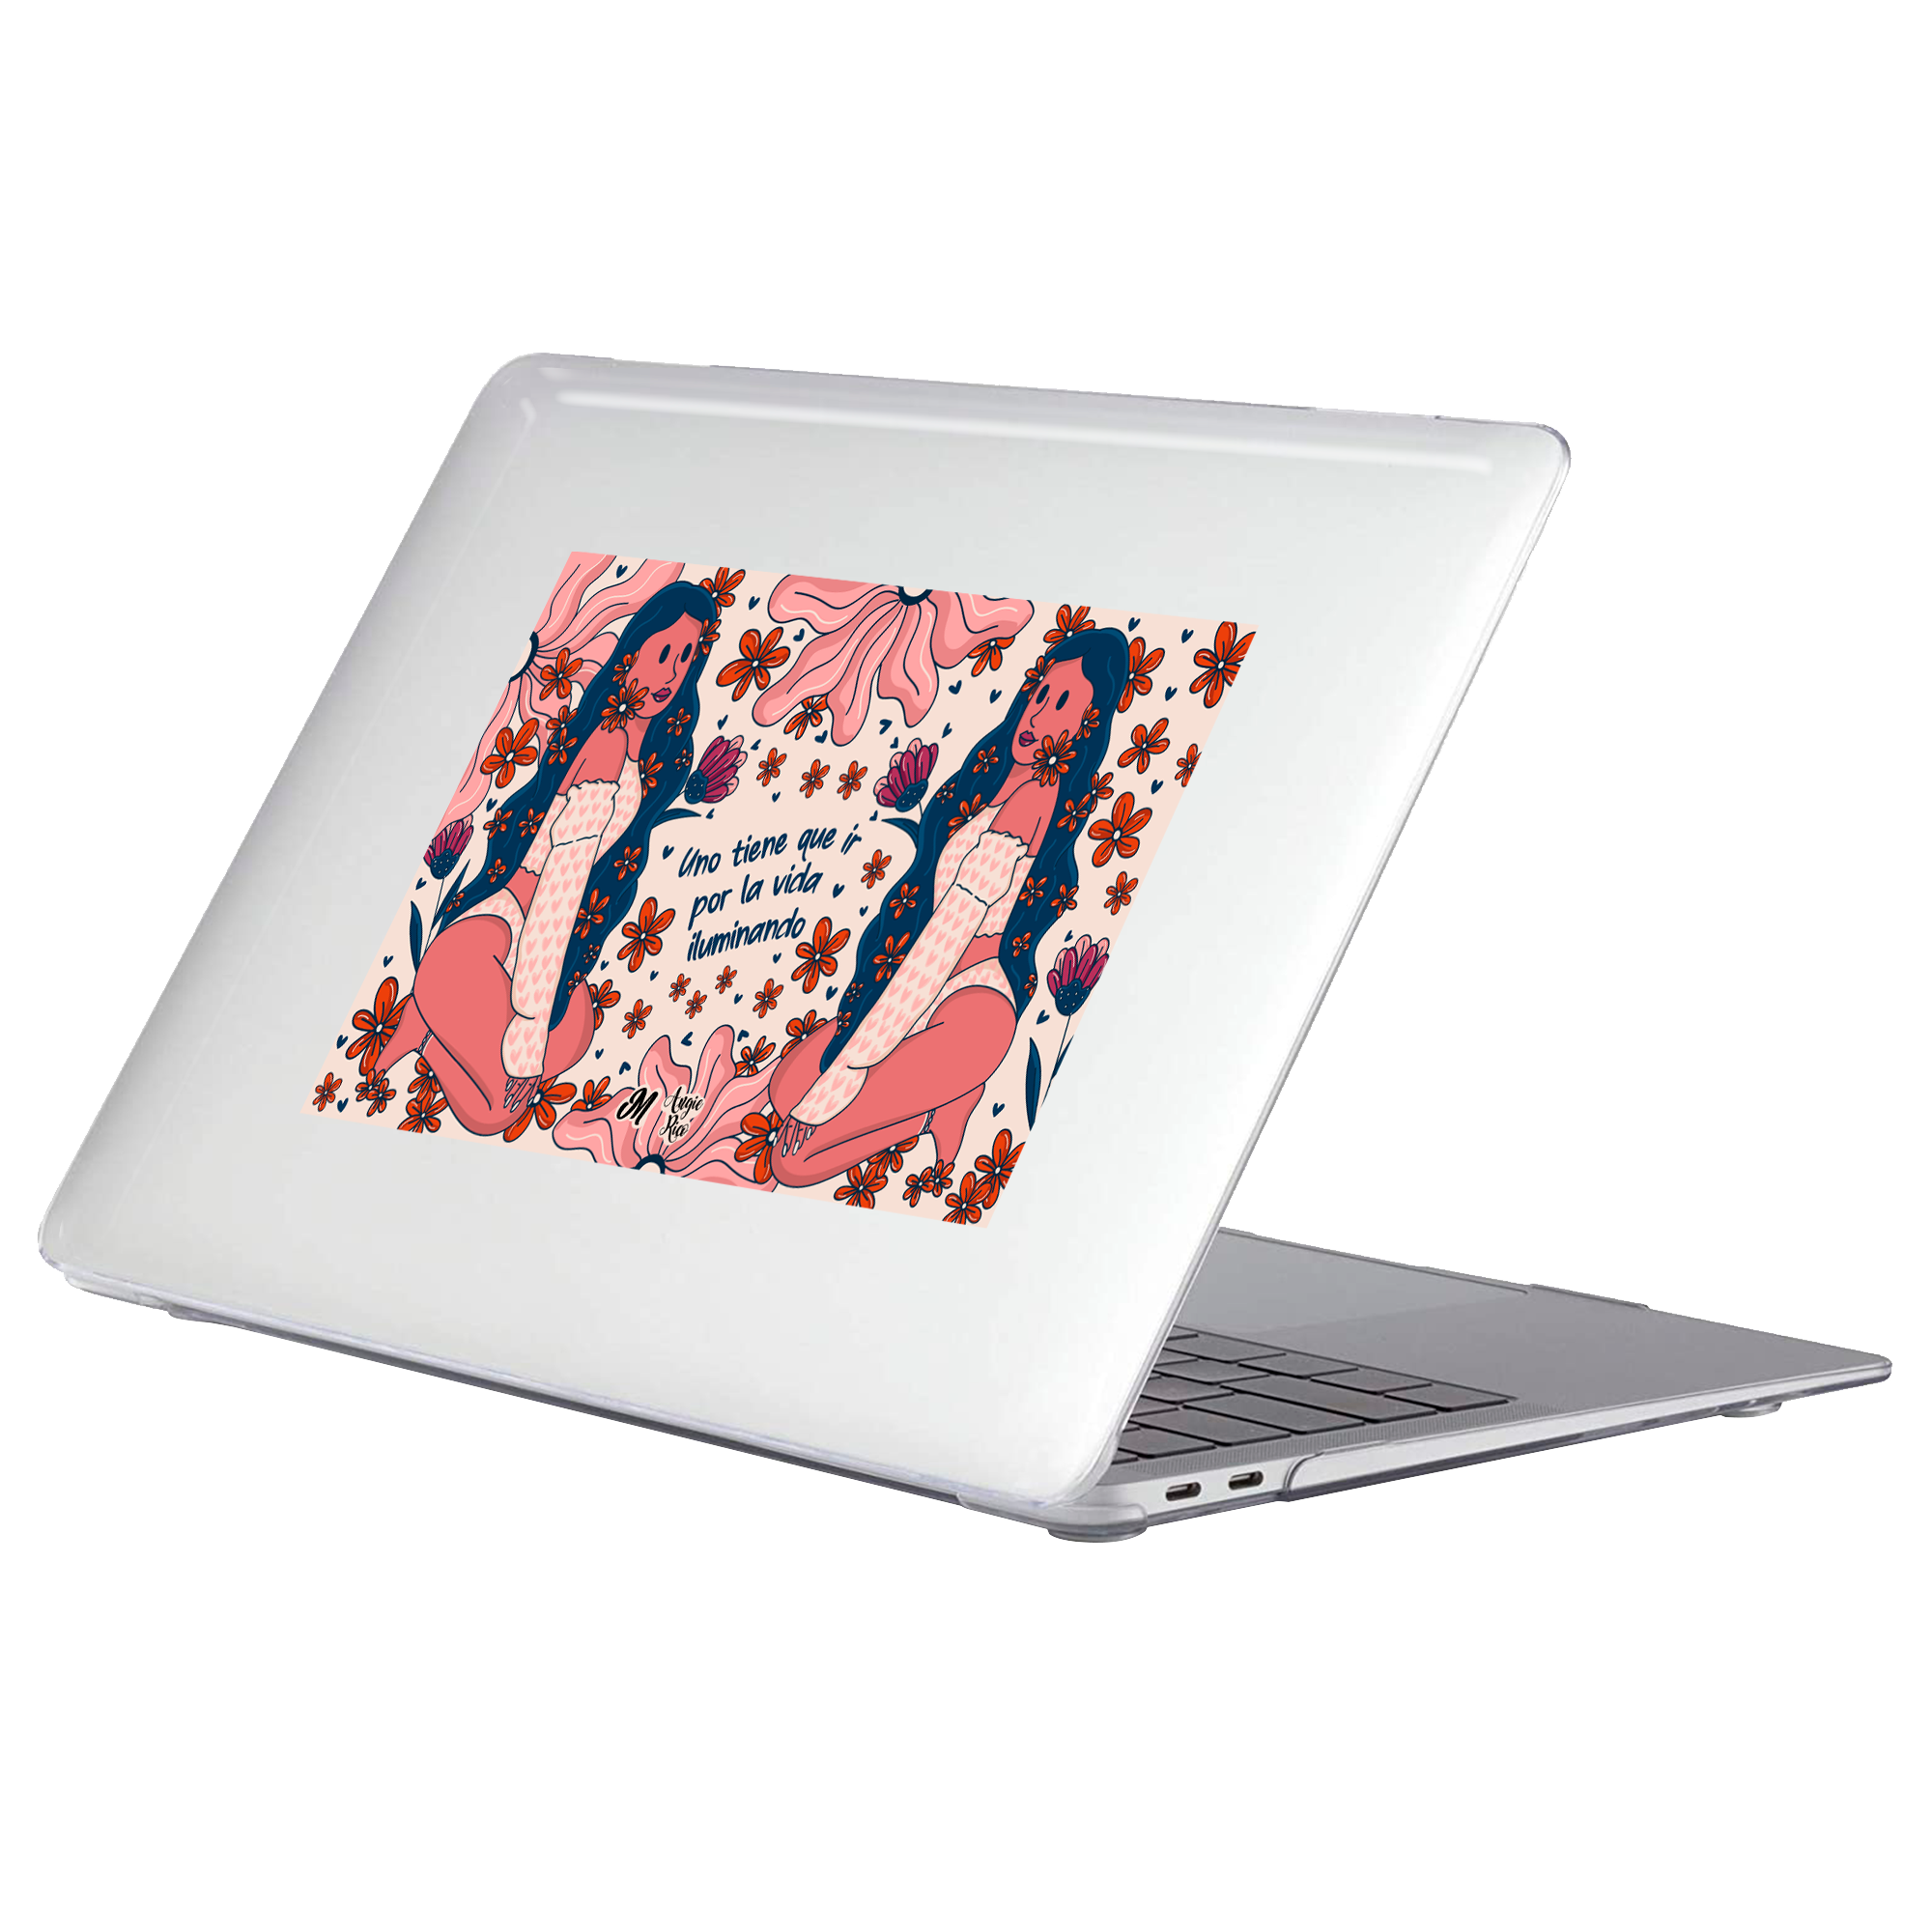 Mujer Iluminando MacBook Case - Mandala Cases